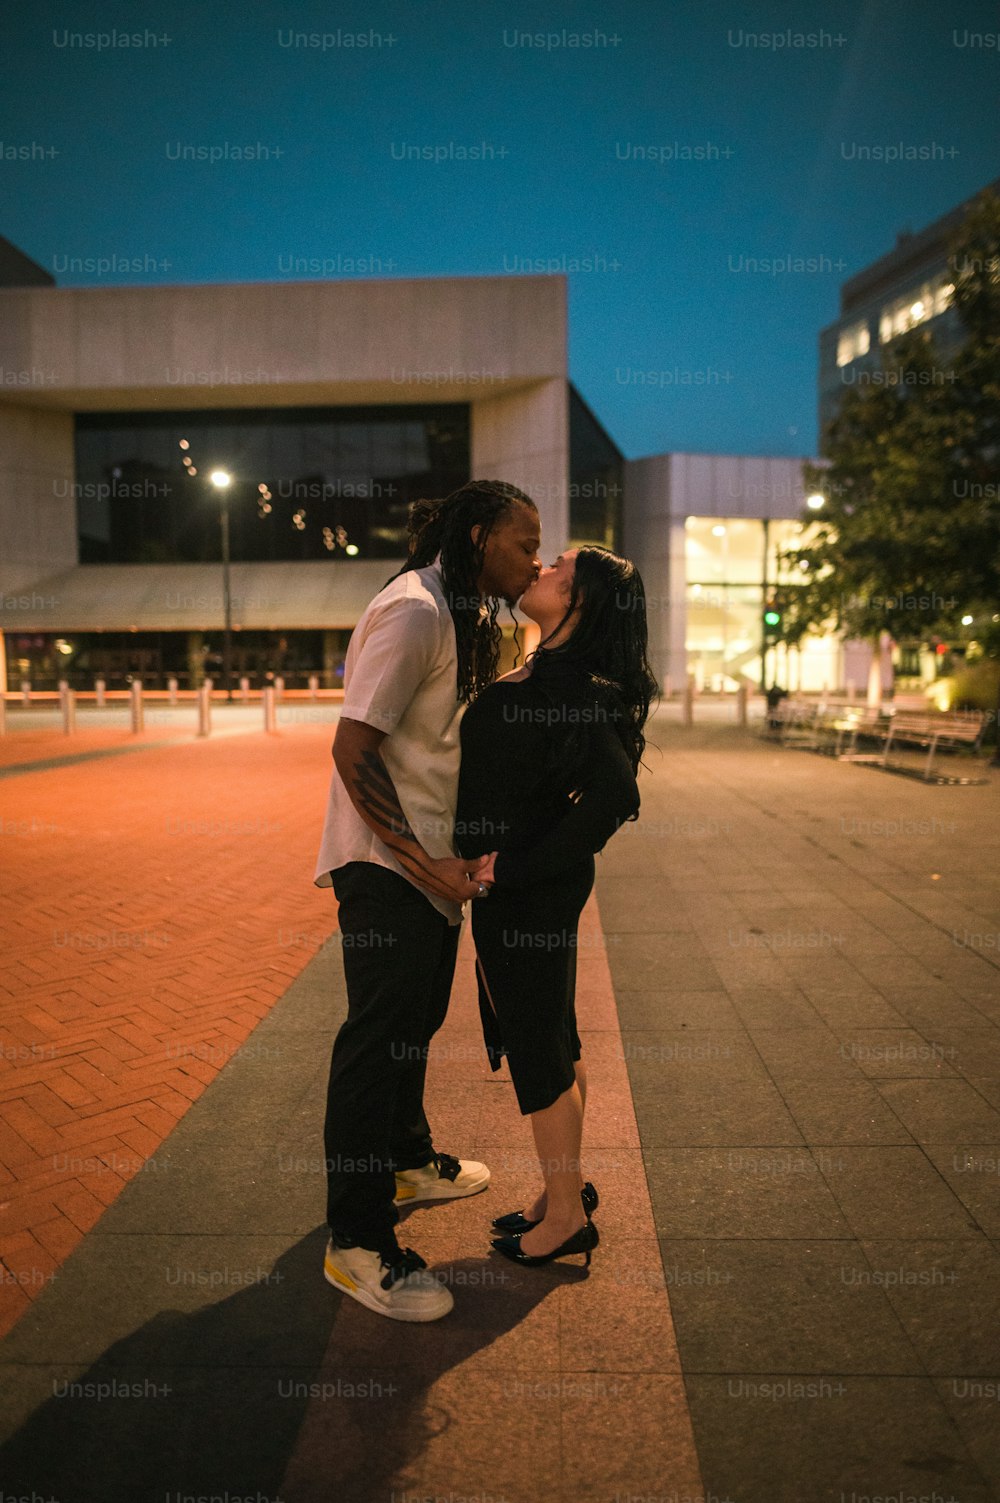 스케이트보드에서 키스하는 남자와 여자